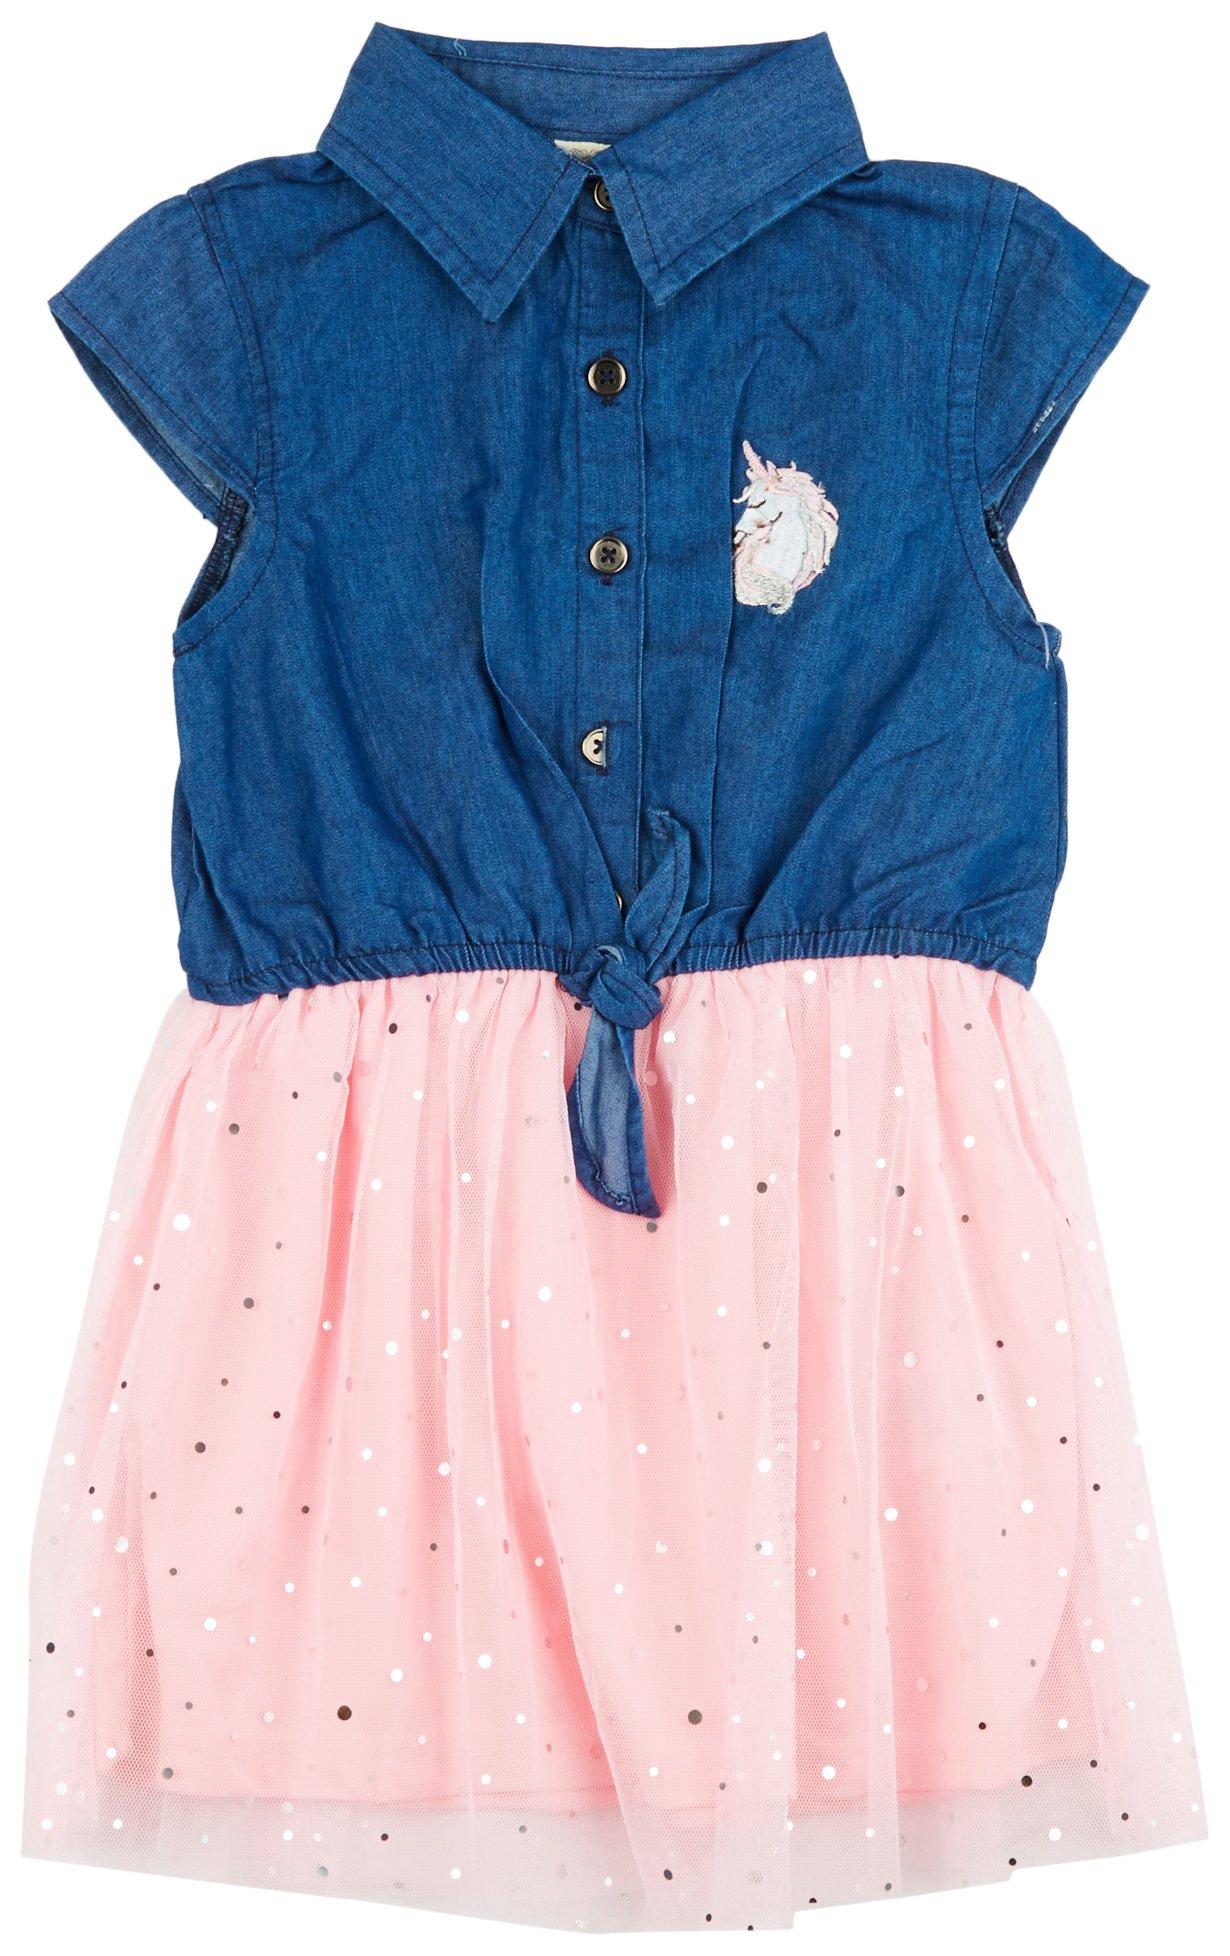 SWEET BUTTERFLY Toddler Girls Unicorn Denim & Tulle Dress